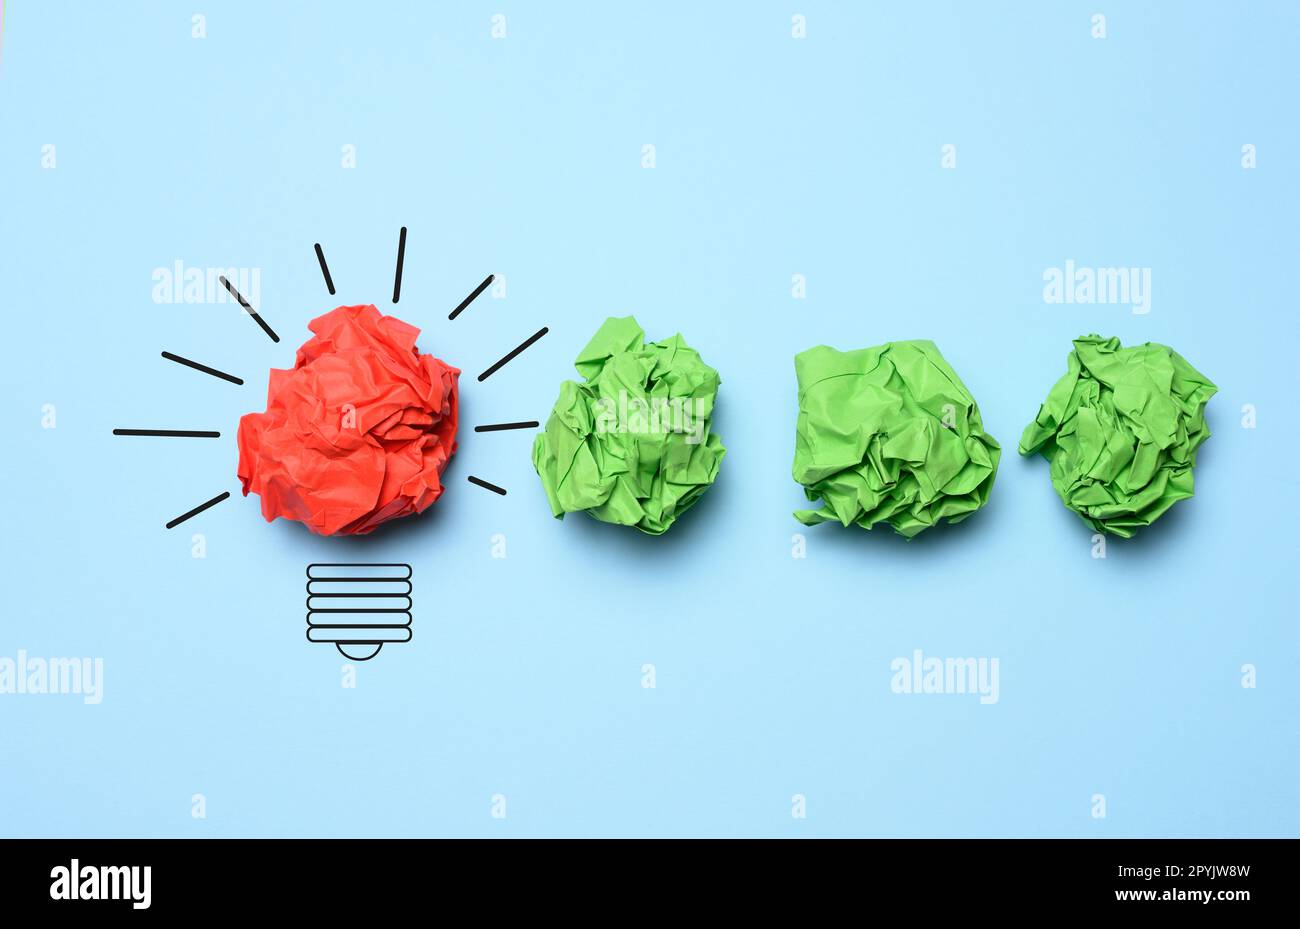 Le concept de l'inspiration avec de nouvelles idées, la recherche de solutions créatives, feuilles de papier froissés sous forme de boules sur fond bleu Banque D'Images